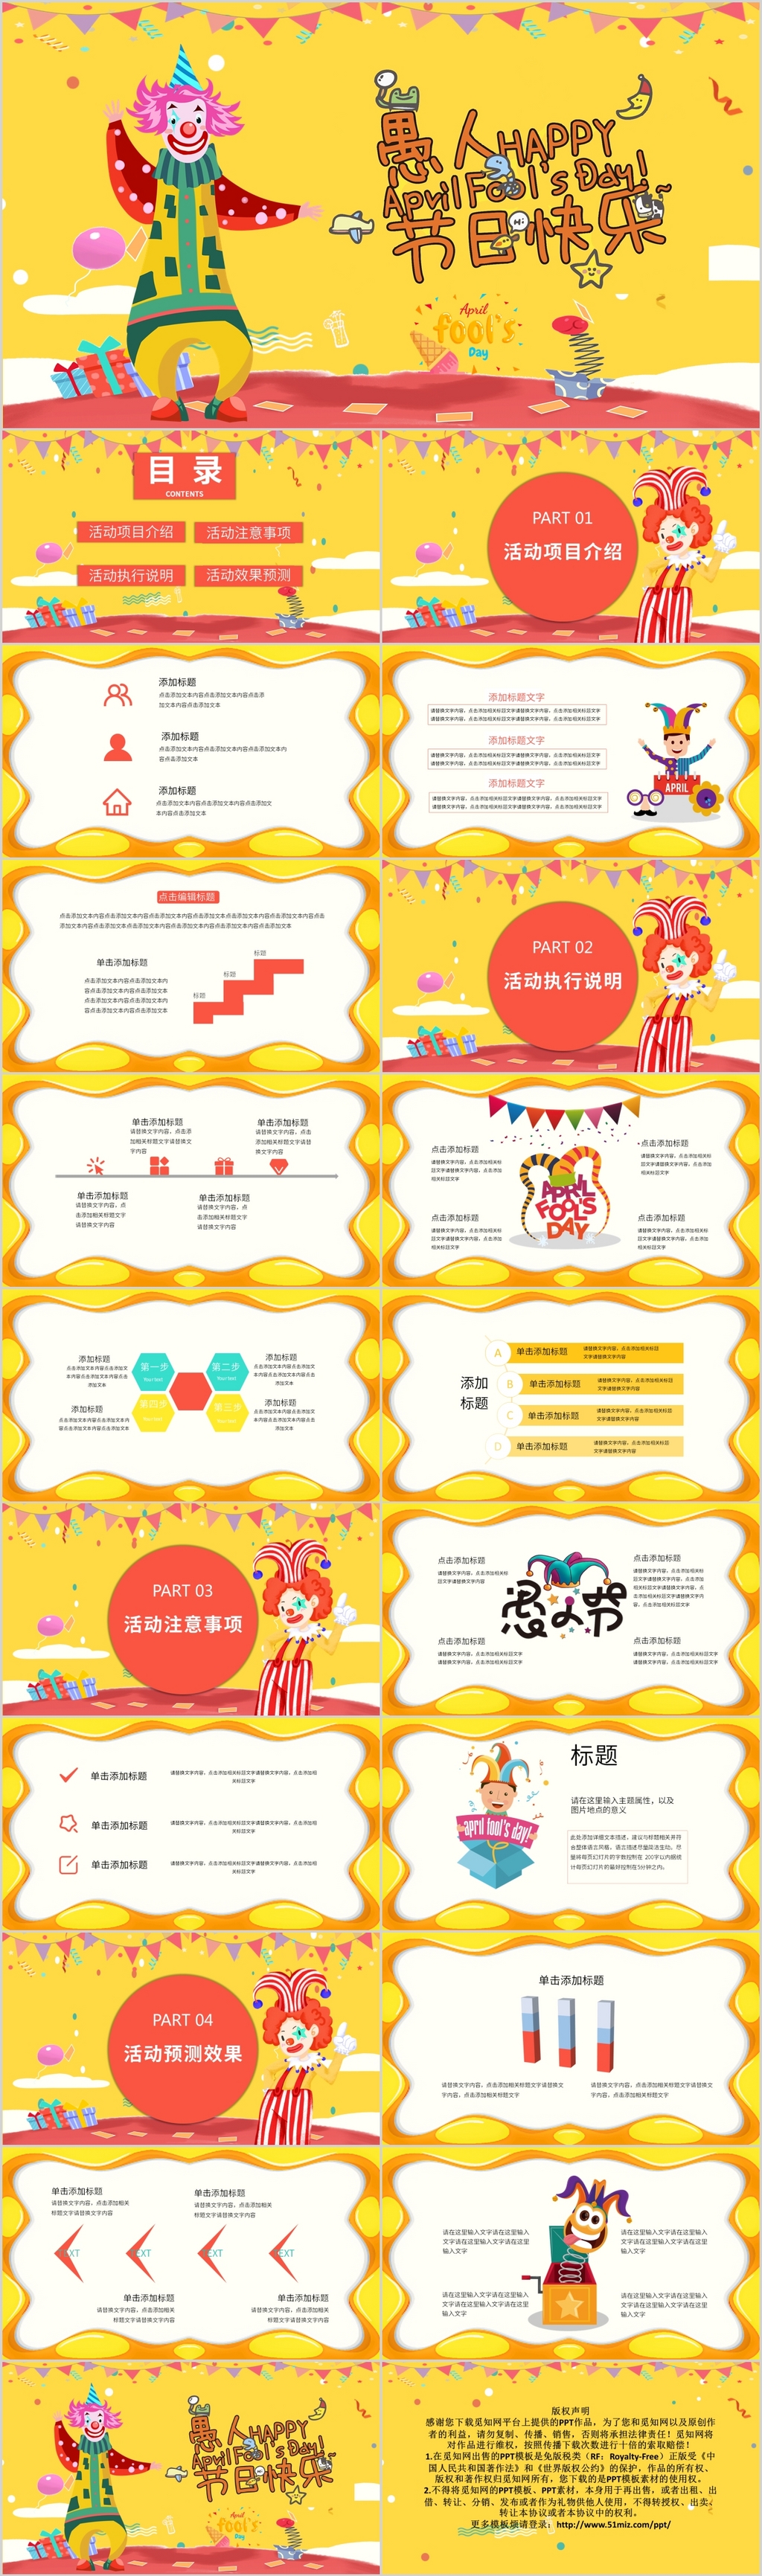 黄色儿童卡通4月1日愚人节节日快乐主题PPT动态模板